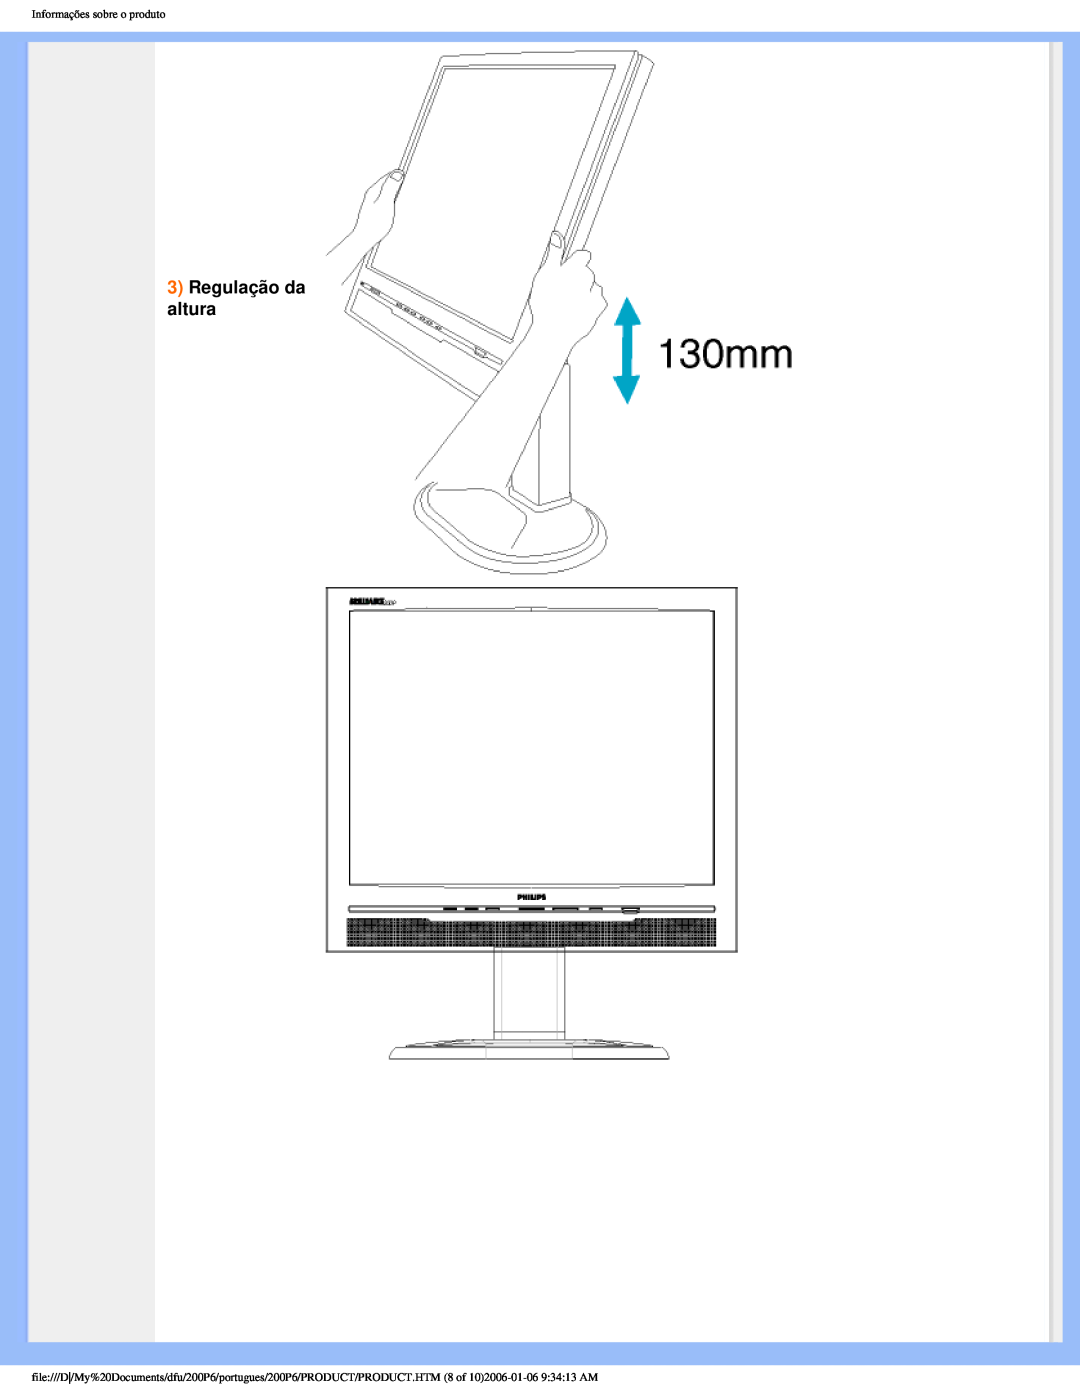 Philips 200P6 user manual Regulação da altura, Informações sobre o produto 